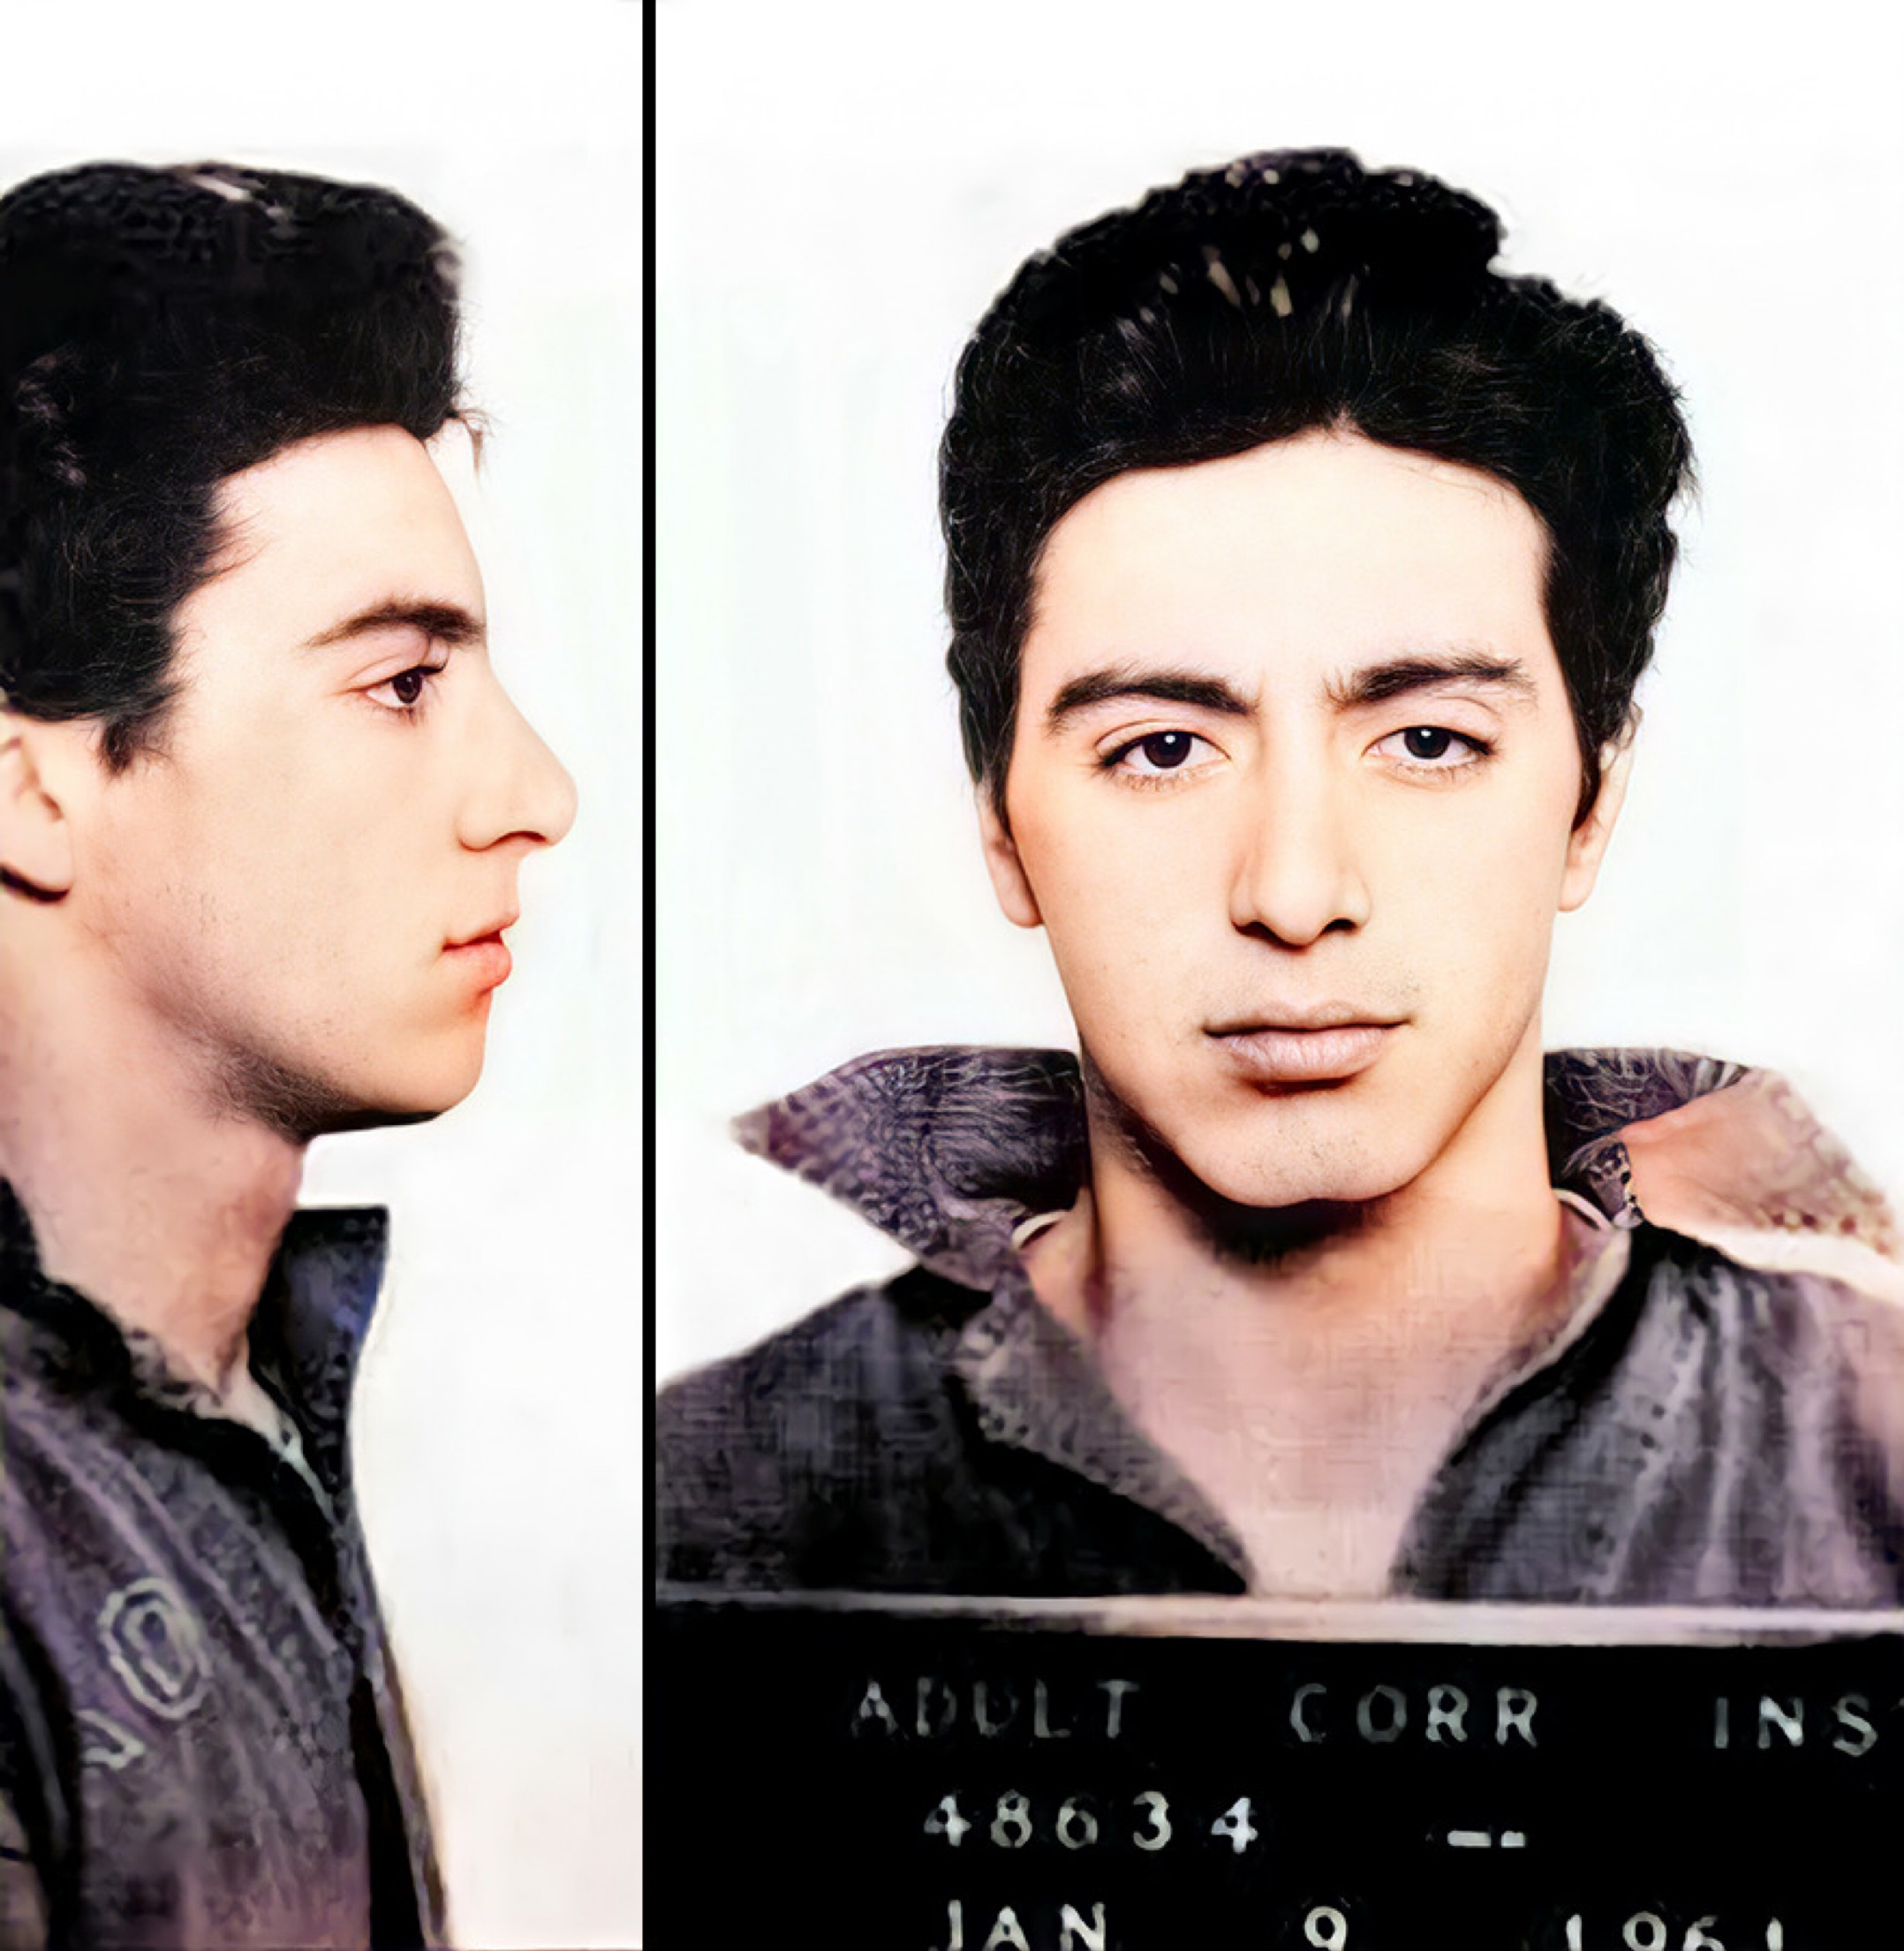 Jason Baker a colorisé des photos en noir et blanc de célébrités, y compris cette image qui a été prise lors de l'arrestation d'Al Pacino à Woonsocket, Rhode Island, en janvier 1961.